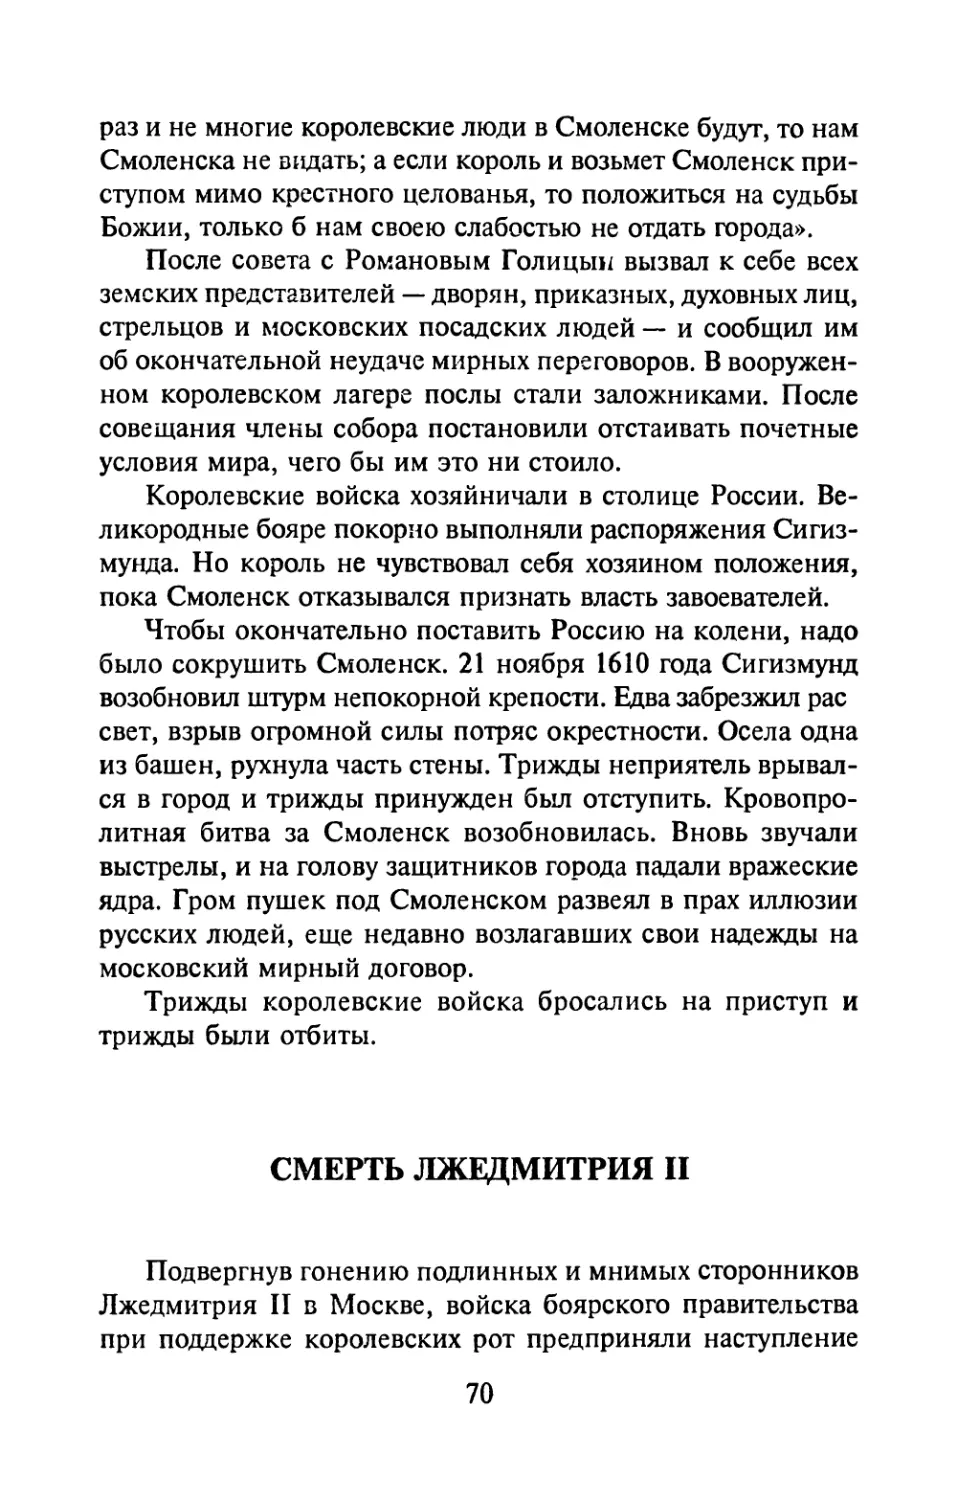 Смерть Лжедмитрия II